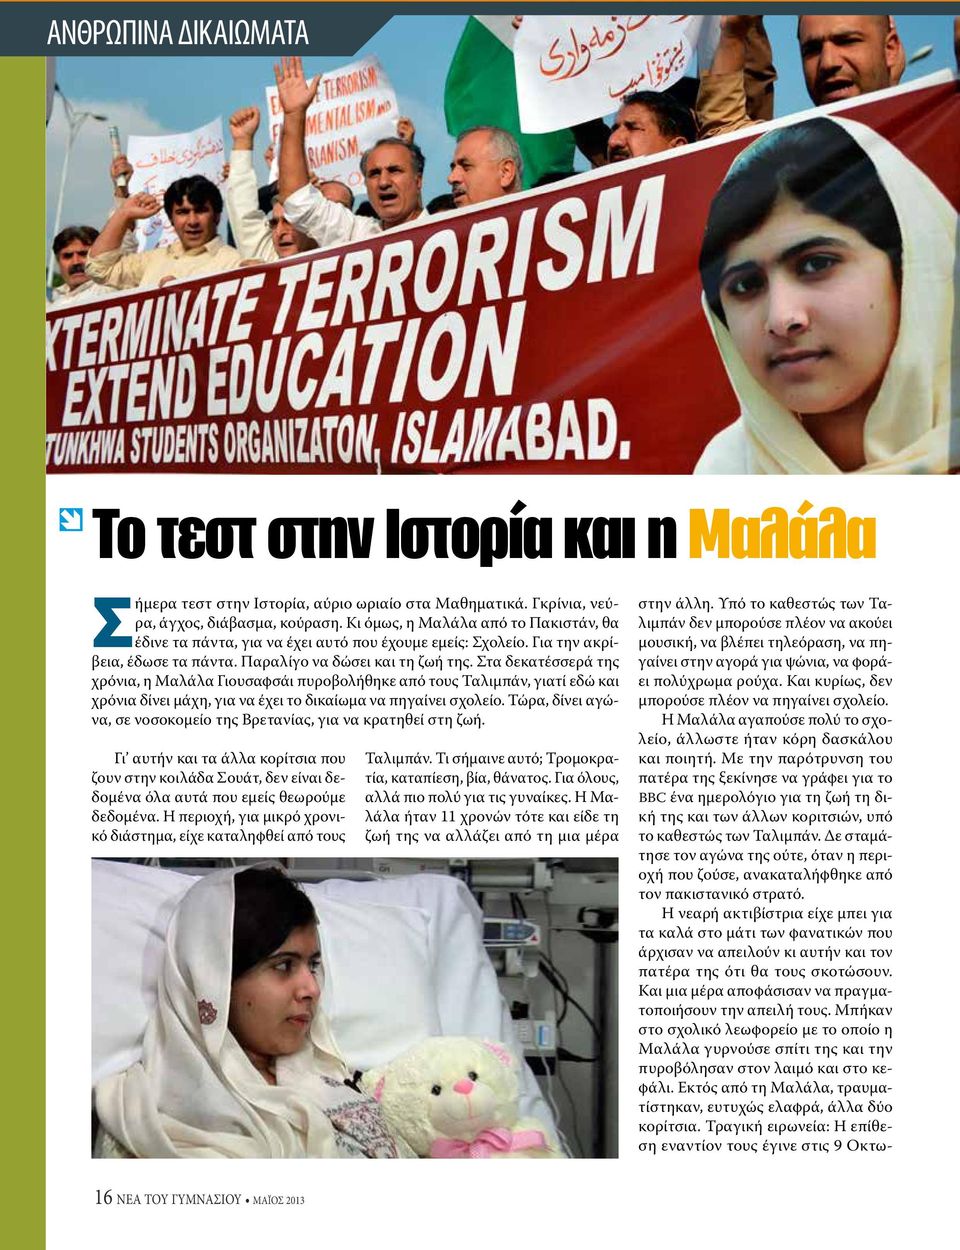 Στα δεκατέσσερά της χρόνια, η Μαλάλα Γιουσαφσάι πυροβολήθηκε από τους Ταλιμπάν, γιατί εδώ και χρόνια δίνει μάχη, για να έχει το δικαίωμα να πηγαίνει σχολείο.